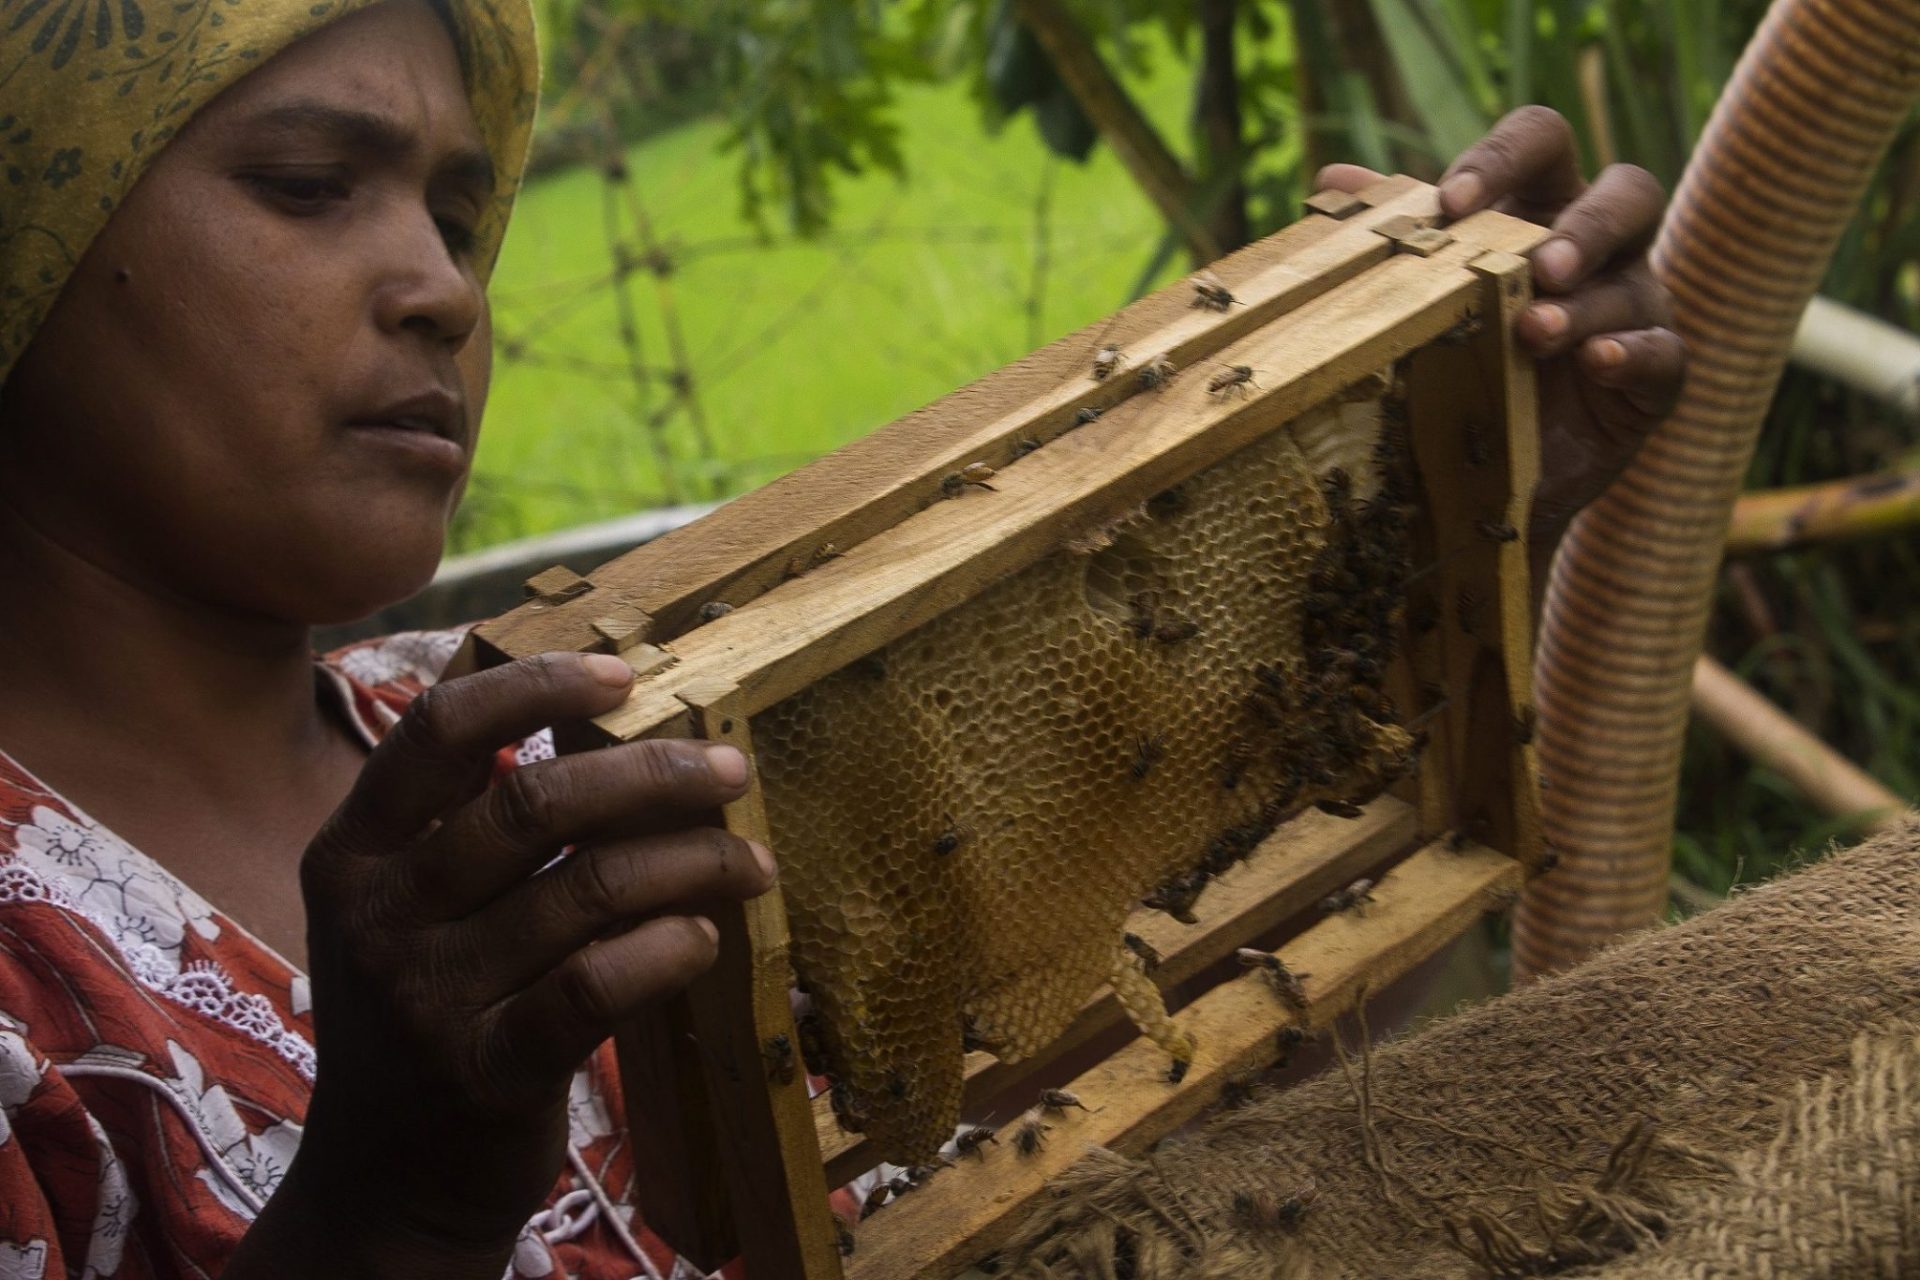 Neema Ramesh Bilkule, campesina y apicultora de 28 años, realiza el cuidado y control periódico de los panales de sus colmenas. Dhule, poblado de Kevdipada, Maharastra, India. Agosto 2016